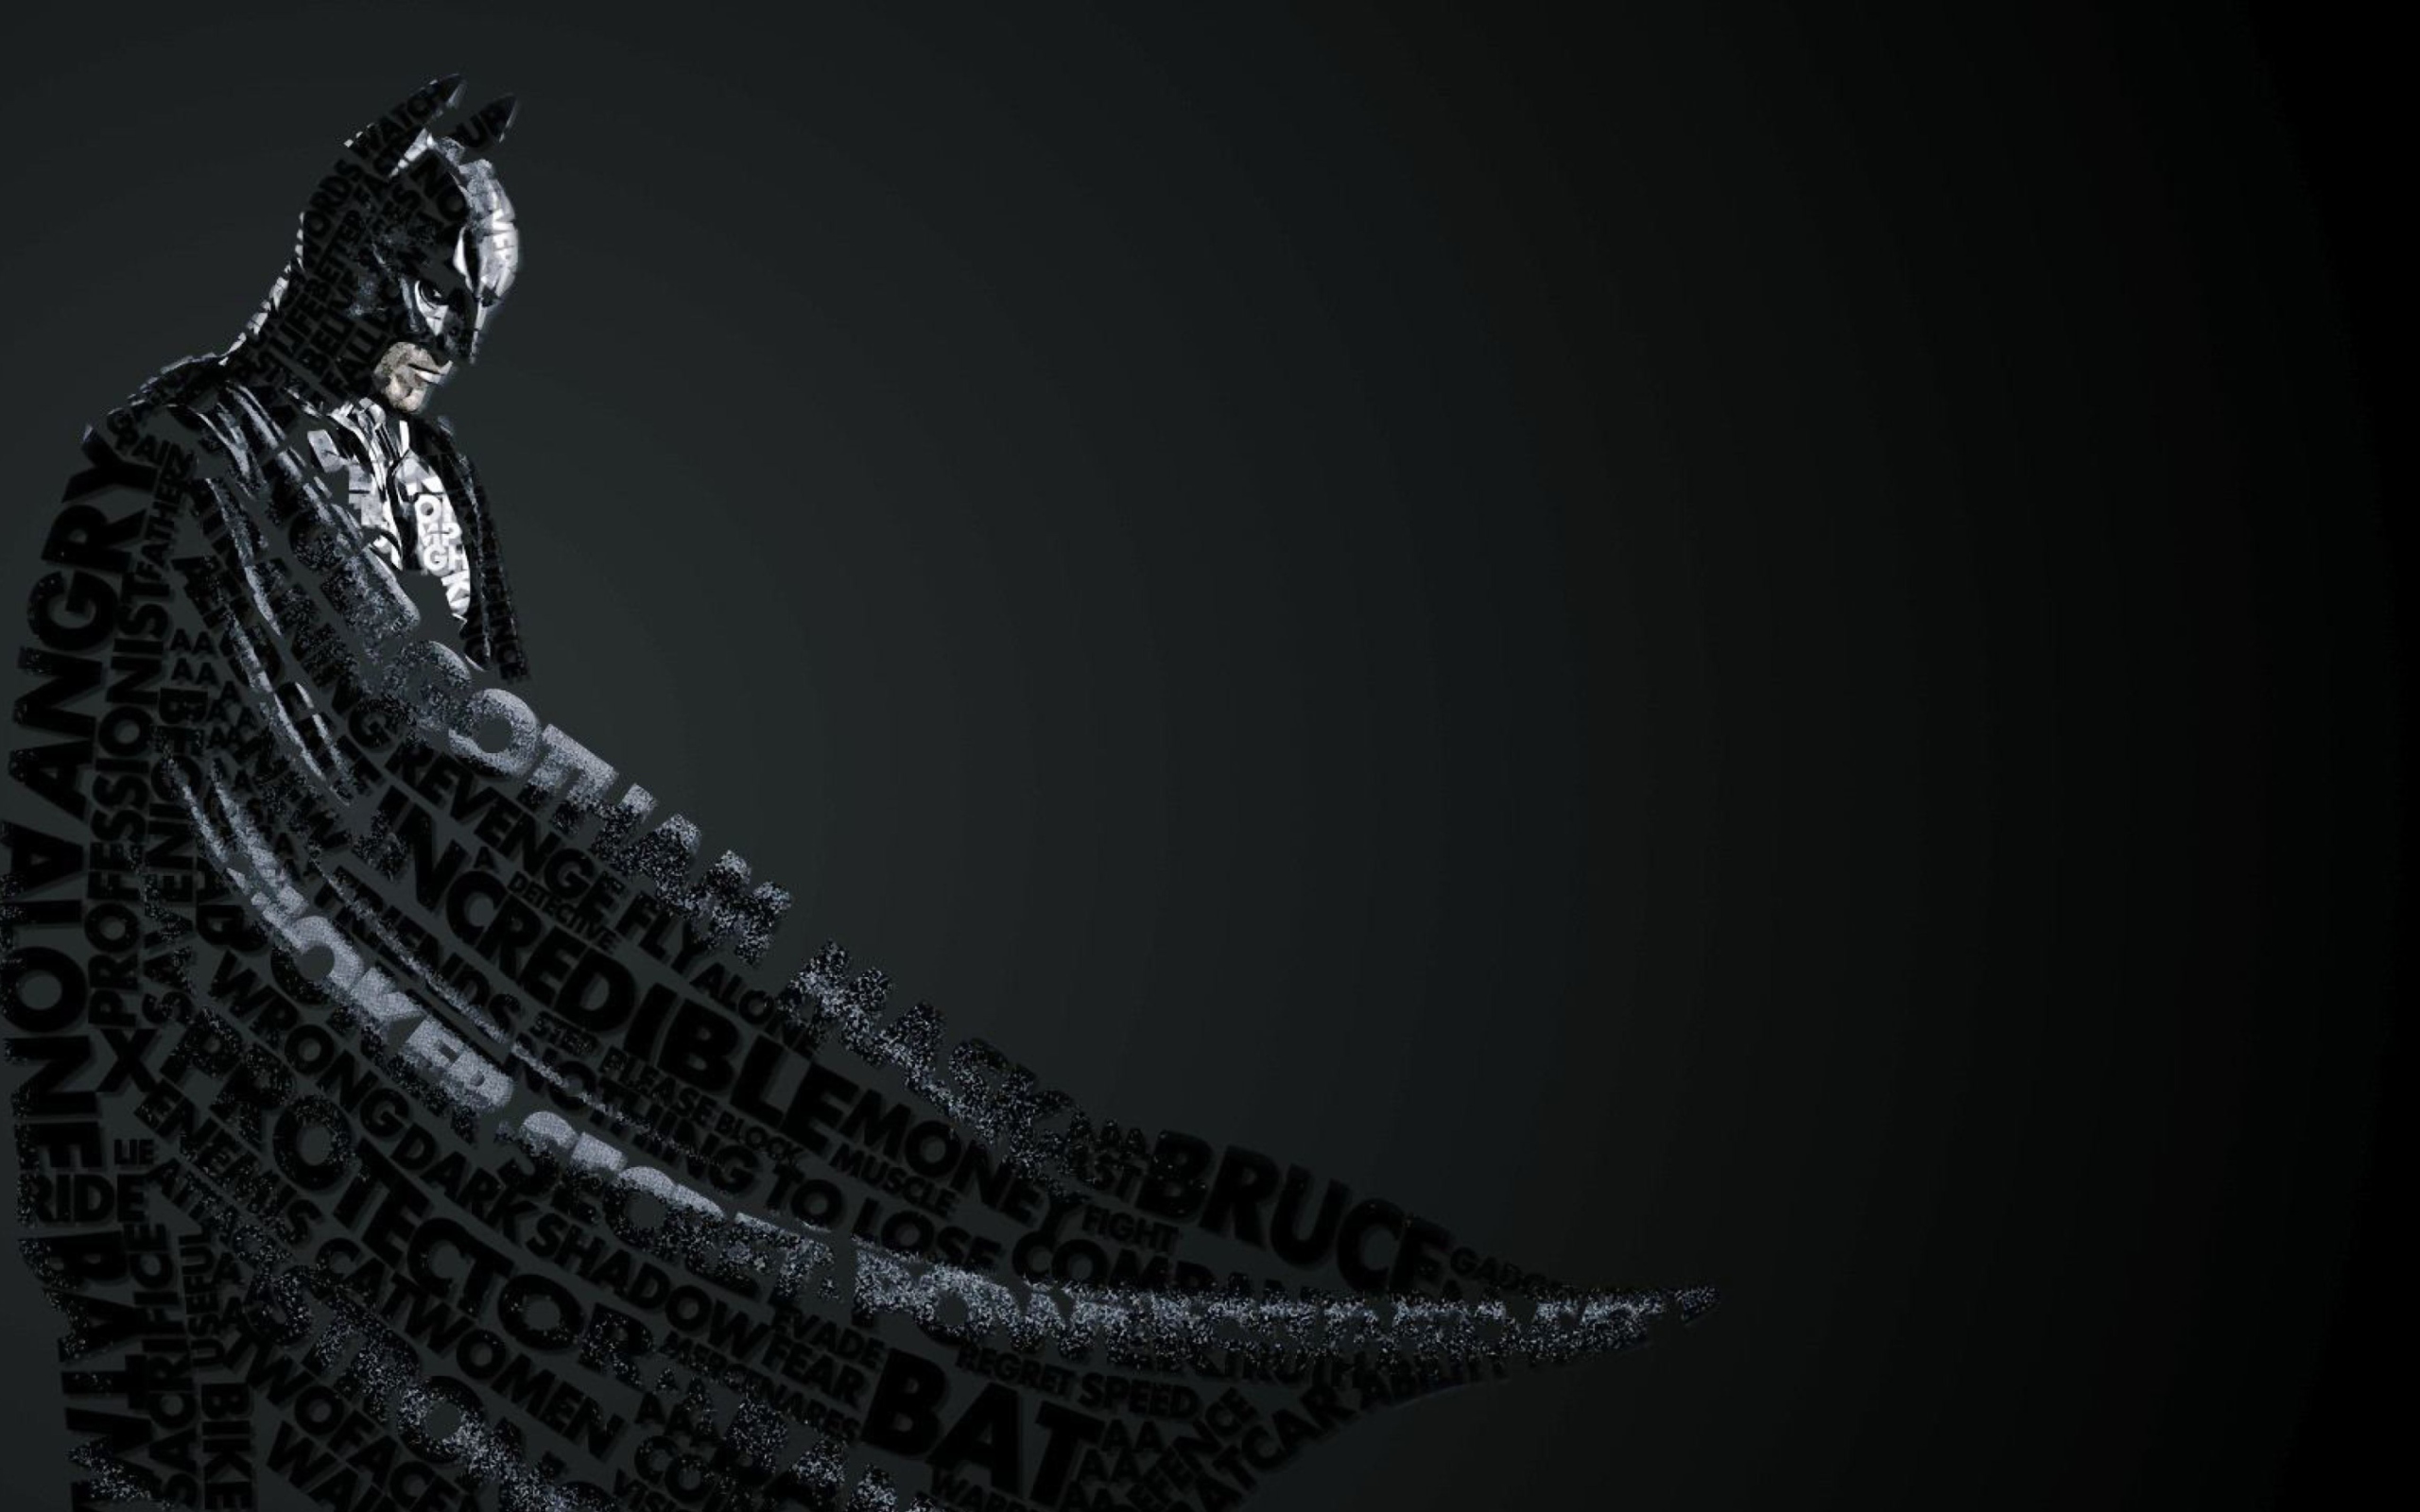 Das Batman Typography Wallpaper 2560x1600